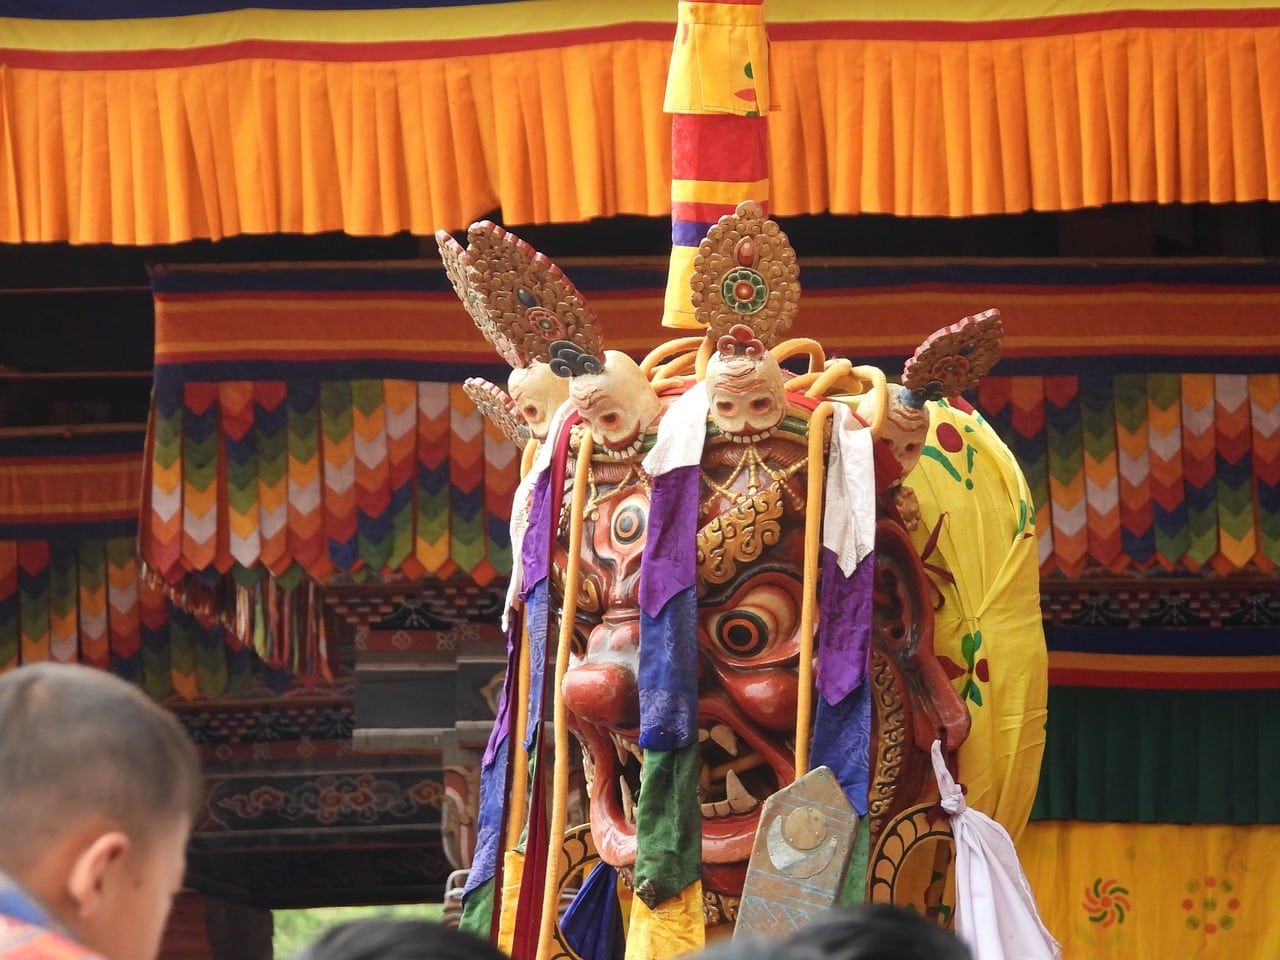 Maschera del Festival del Bhutan